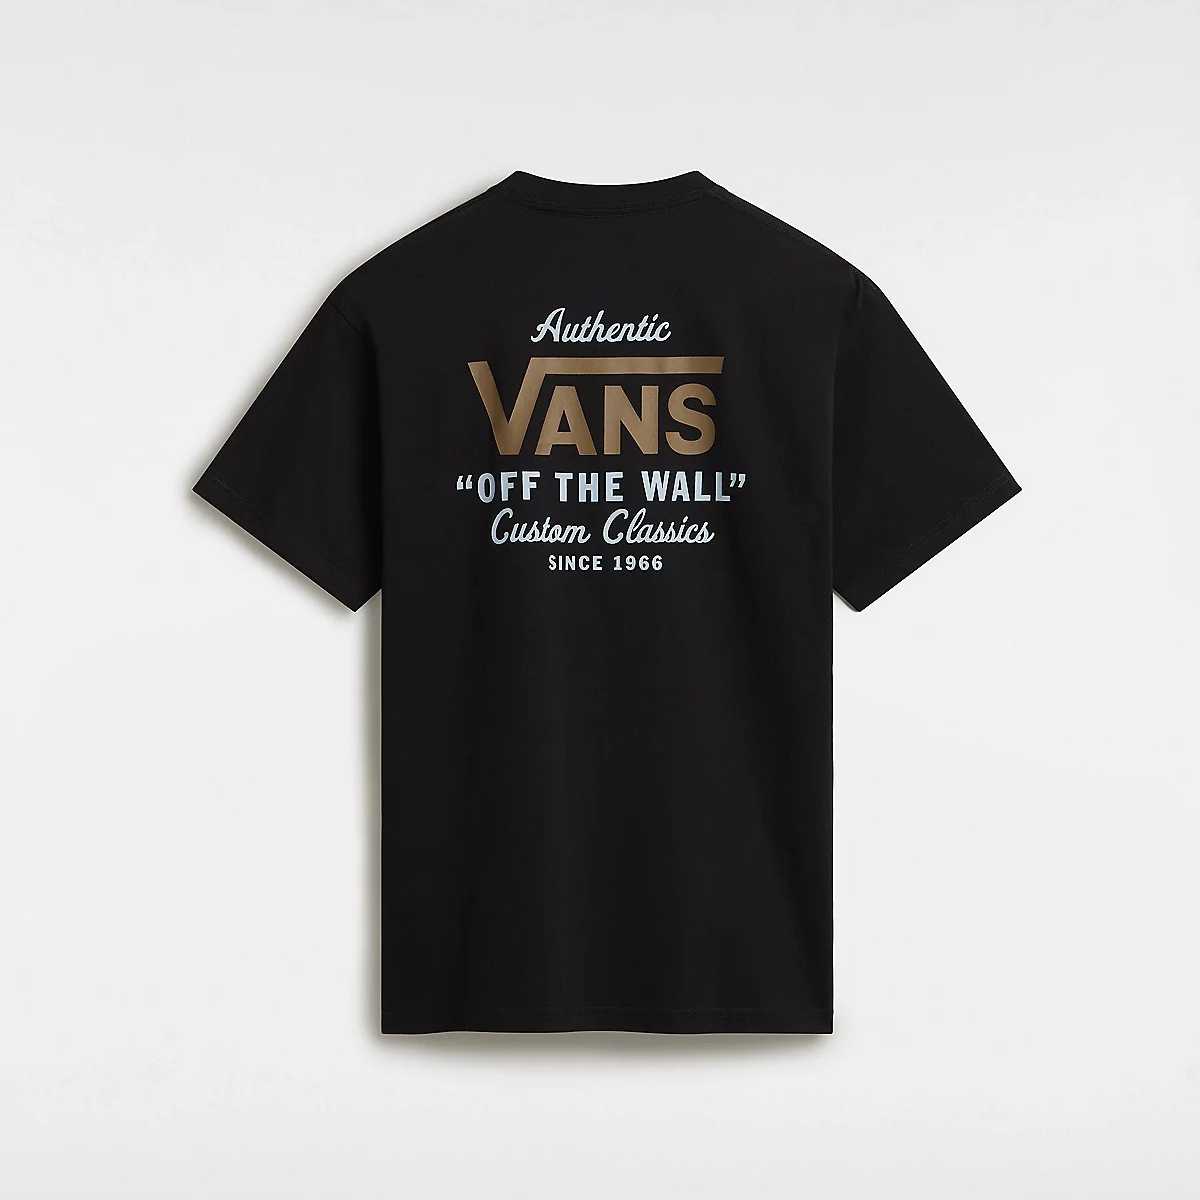 Camiseta Vans Mn Holder ST Classic Black Antelope